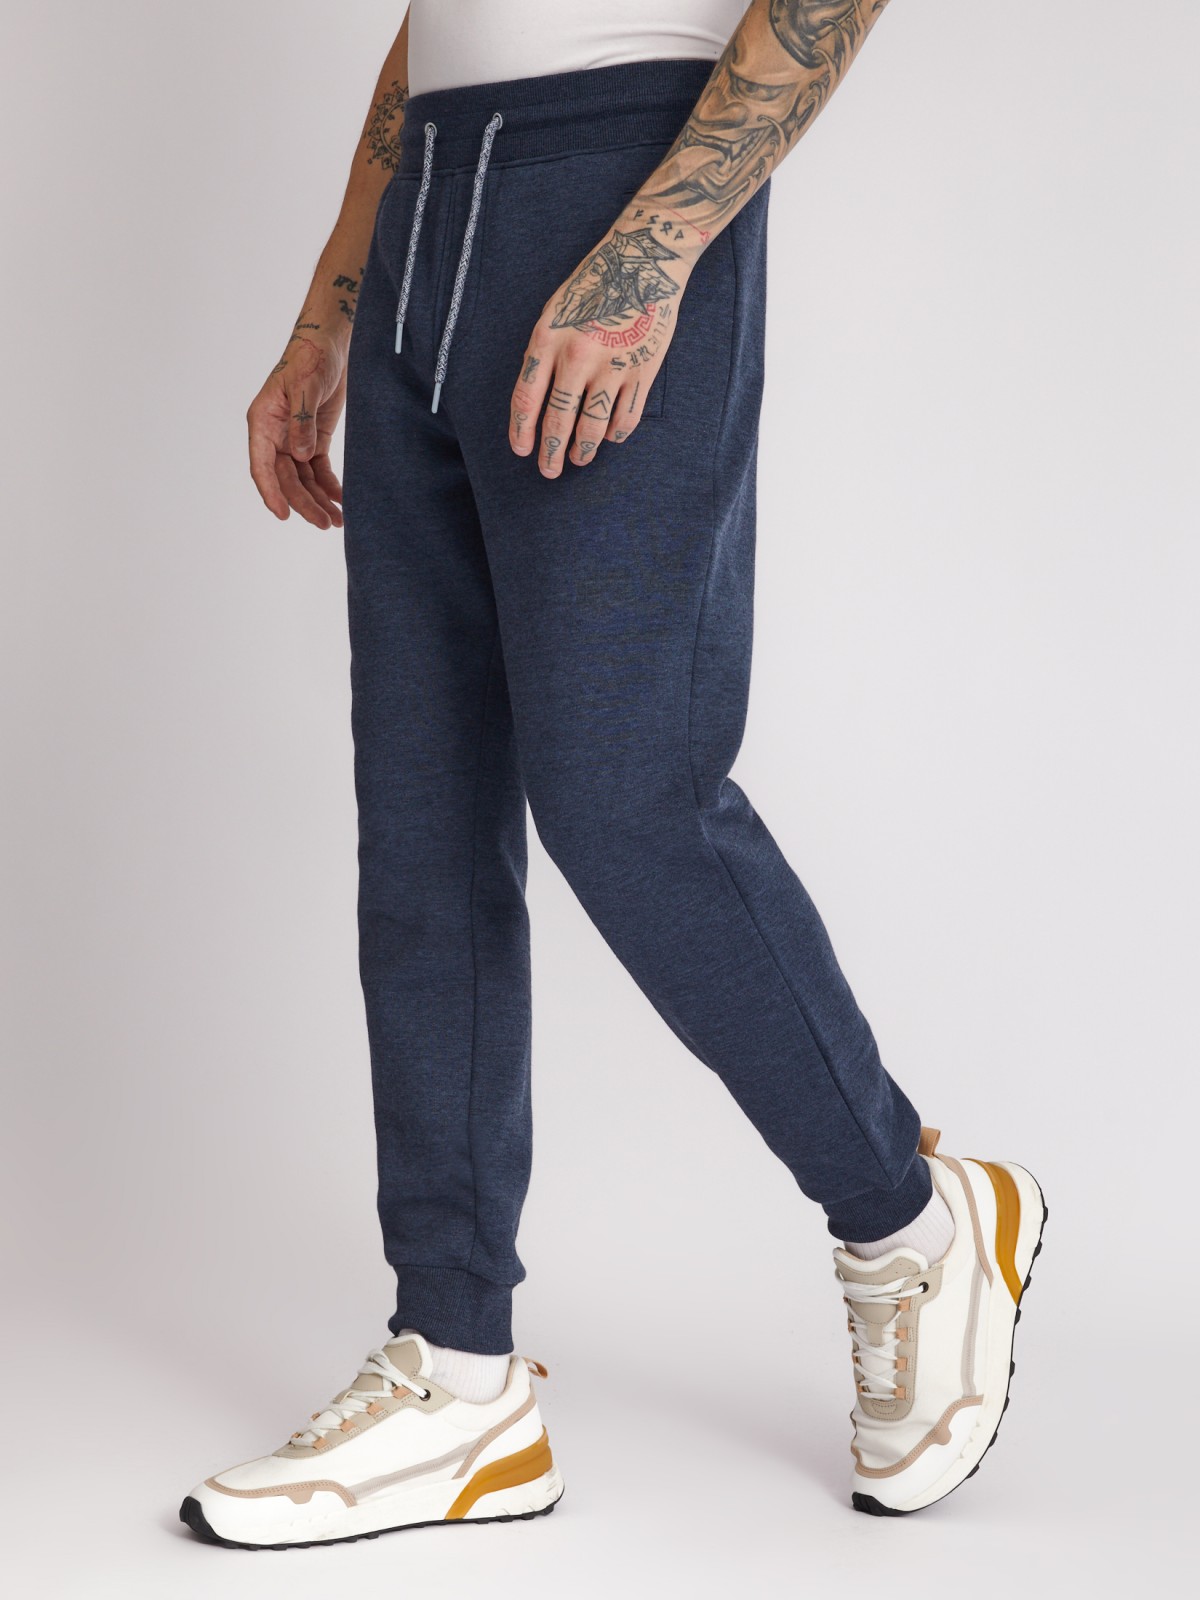 Утеплённые трикотажные брюки-джоггеры в спортивном стиле zolla 213337679012, цвет голубой, размер M - фото 3